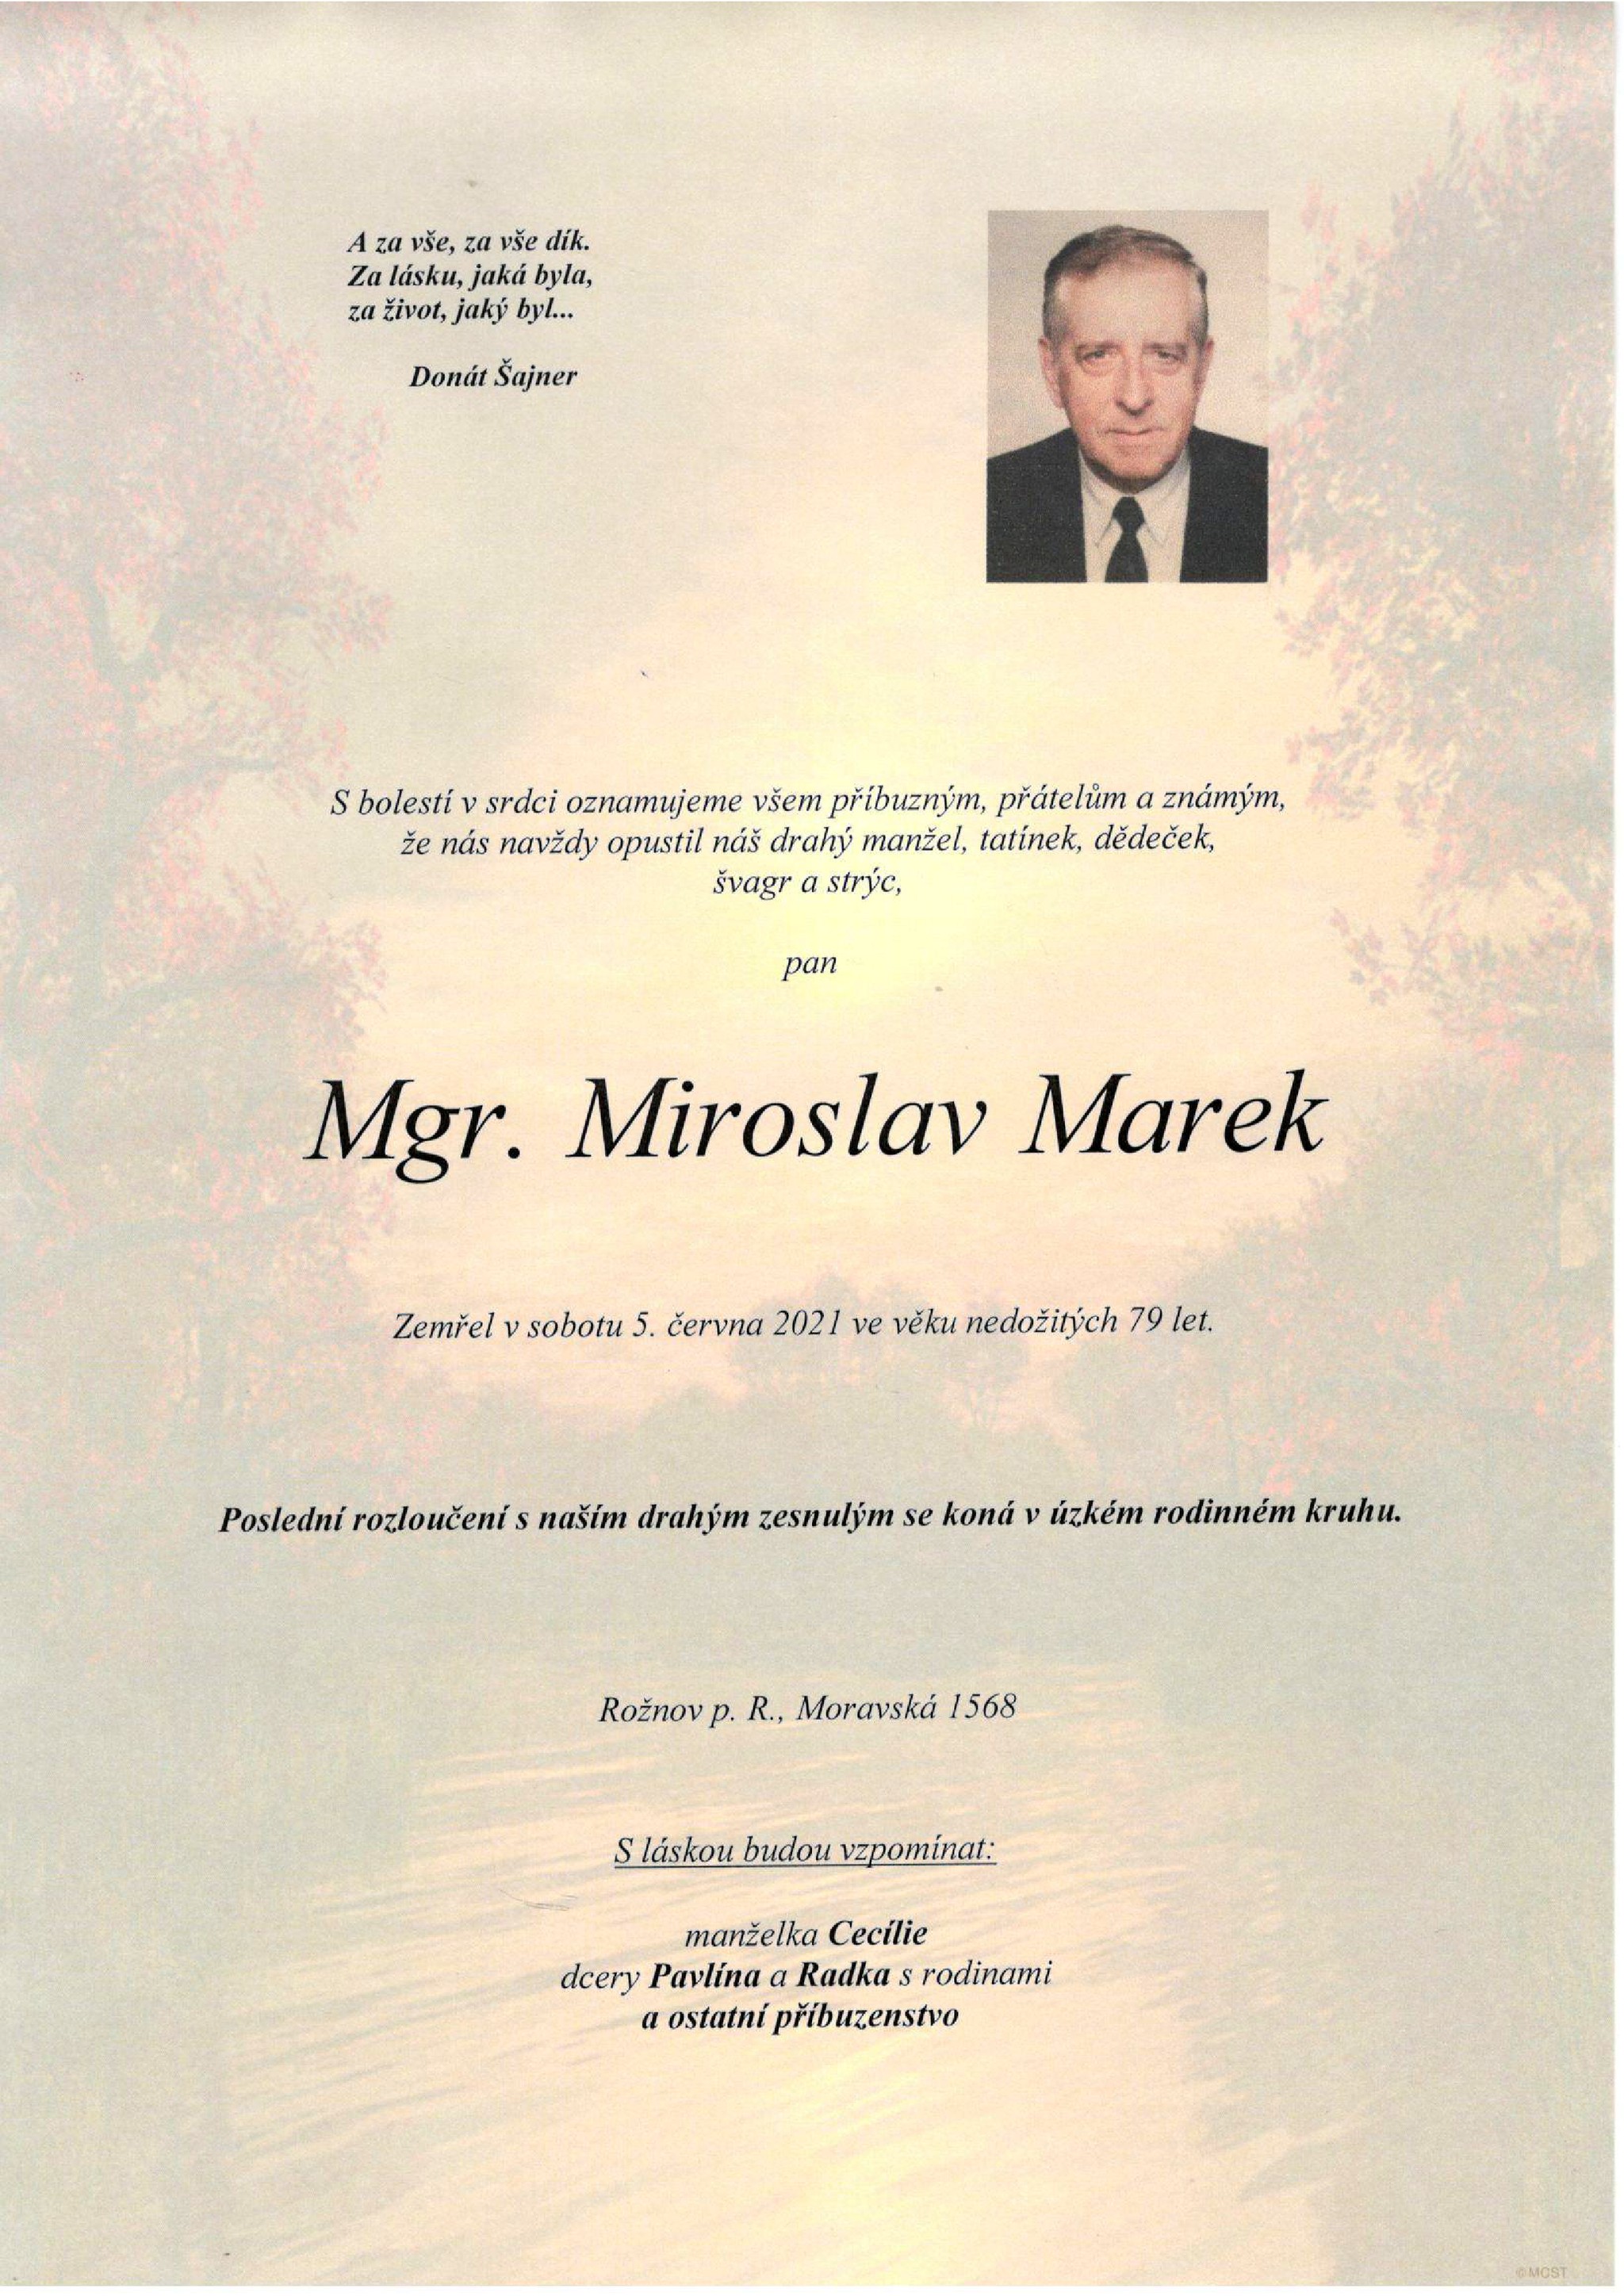 Mgr. Miroslav Marek